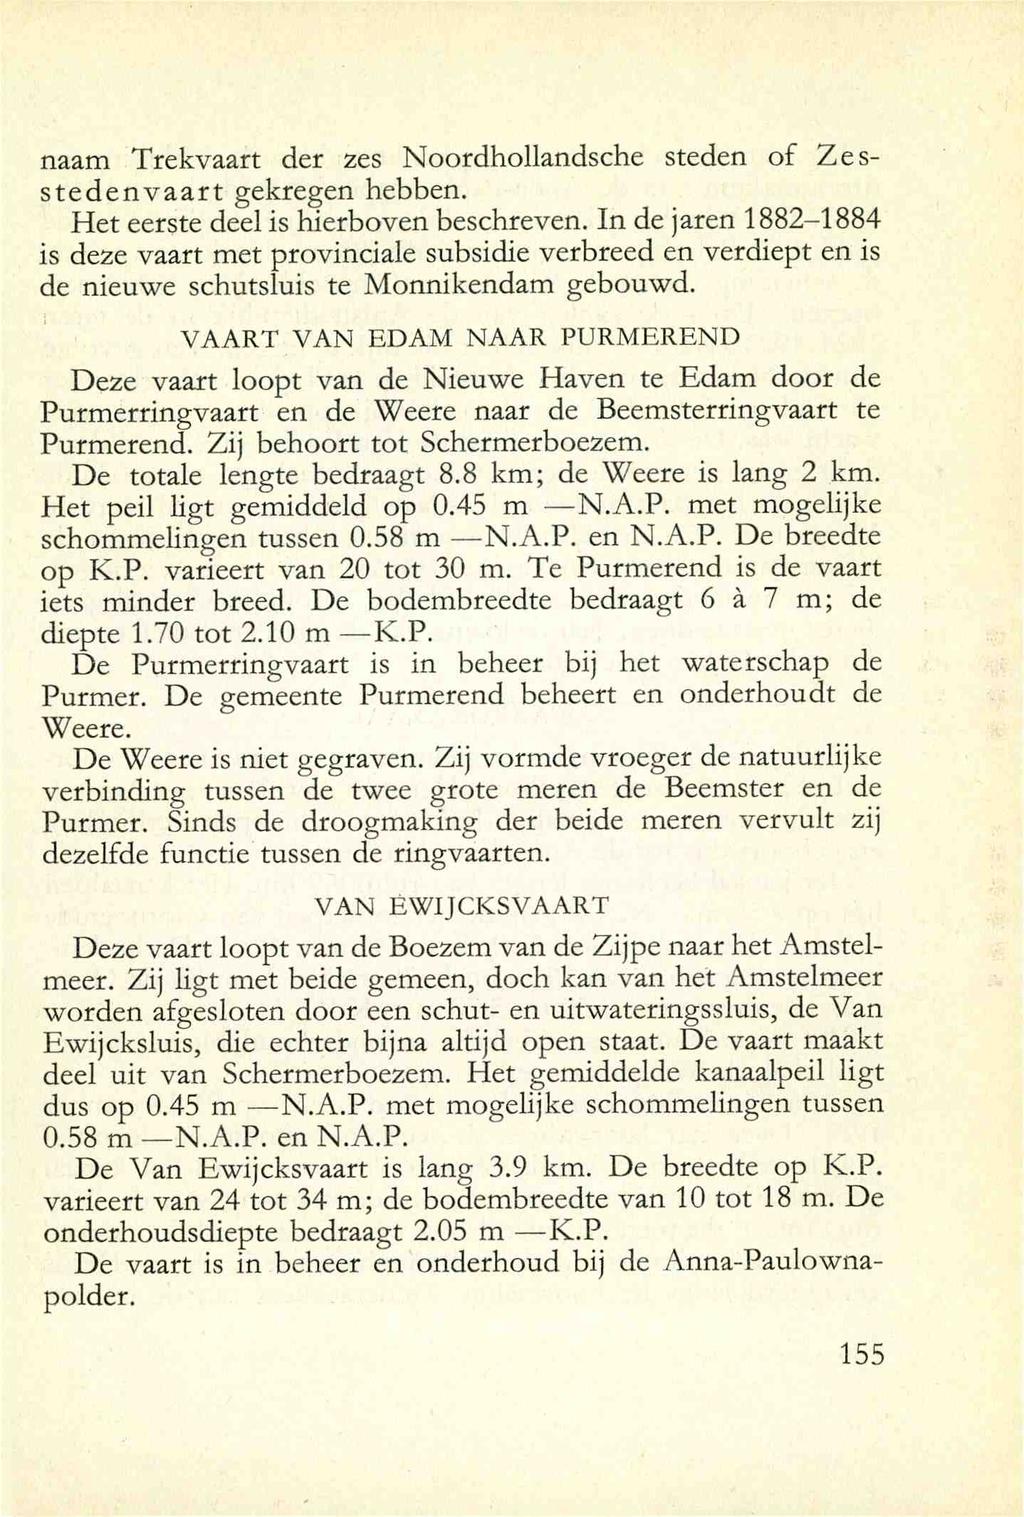 naam Trekvaart der zes Noordhollandsche steden of Zesstedenvaart gekregen hebben. Het eerste deel is hierboven beschreven.